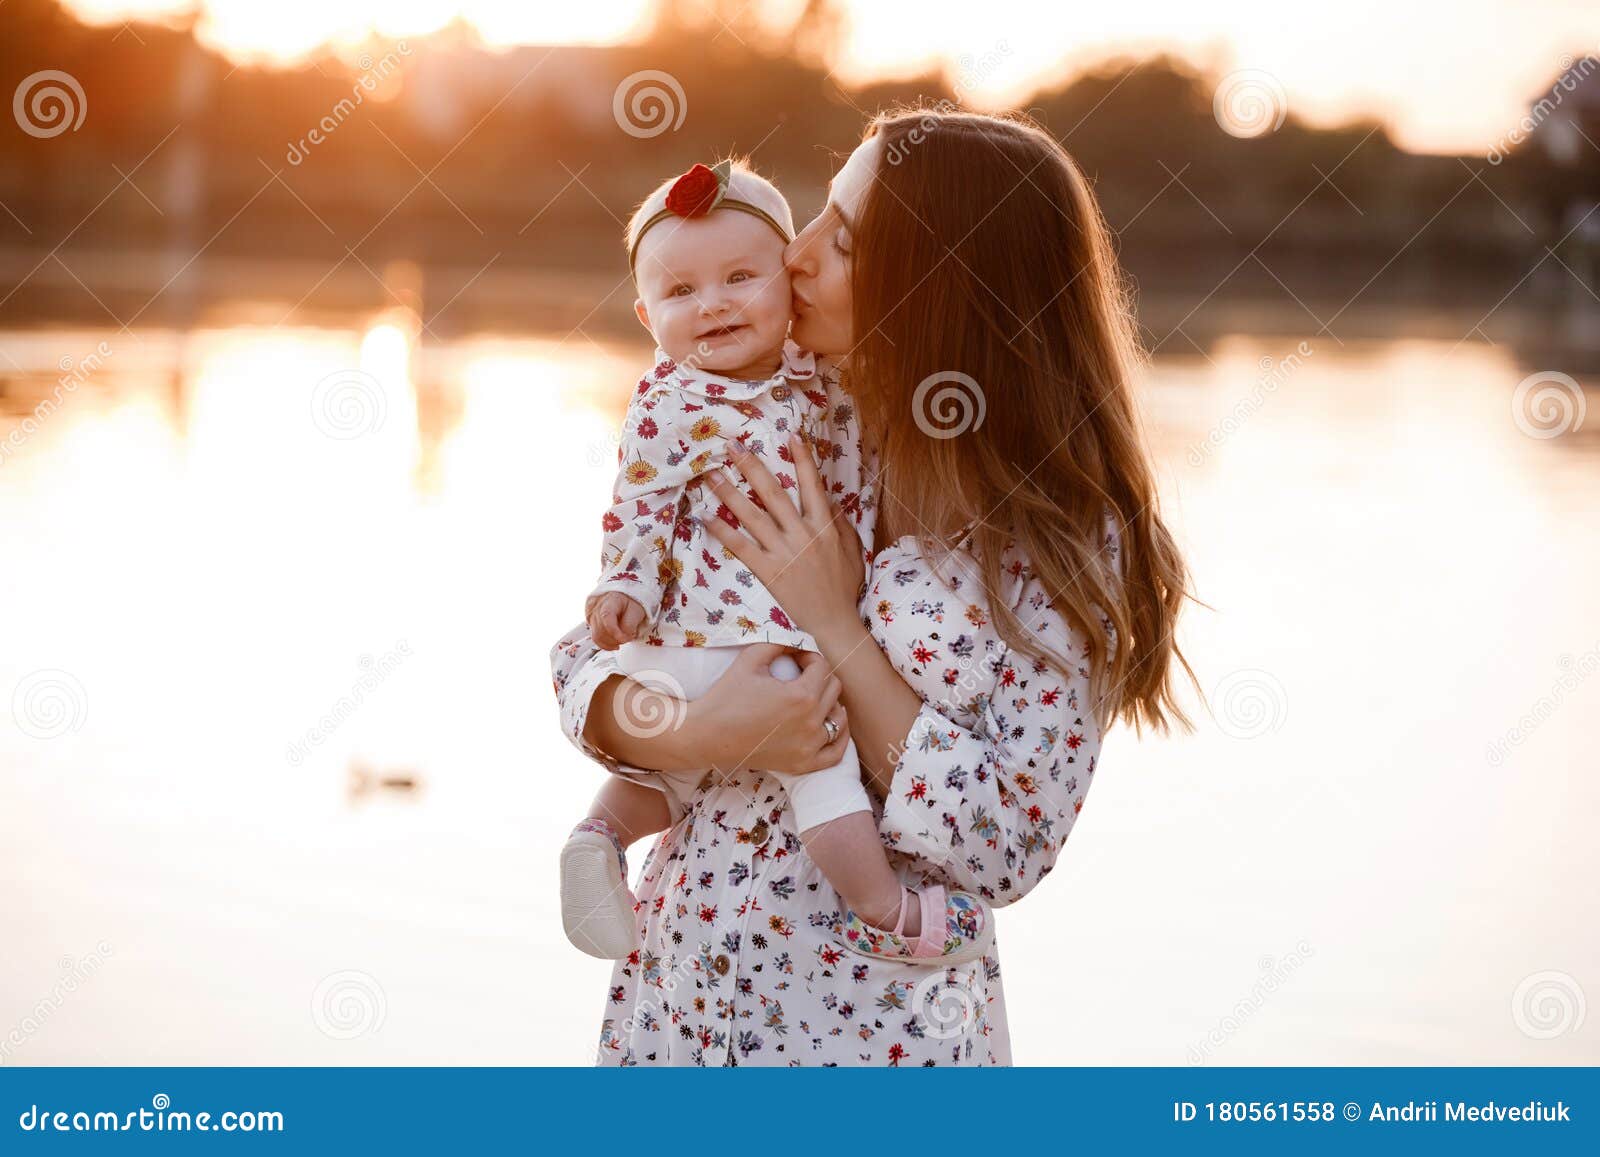 Girl kissing mother at a lake Stock Photo, Royalty Free 